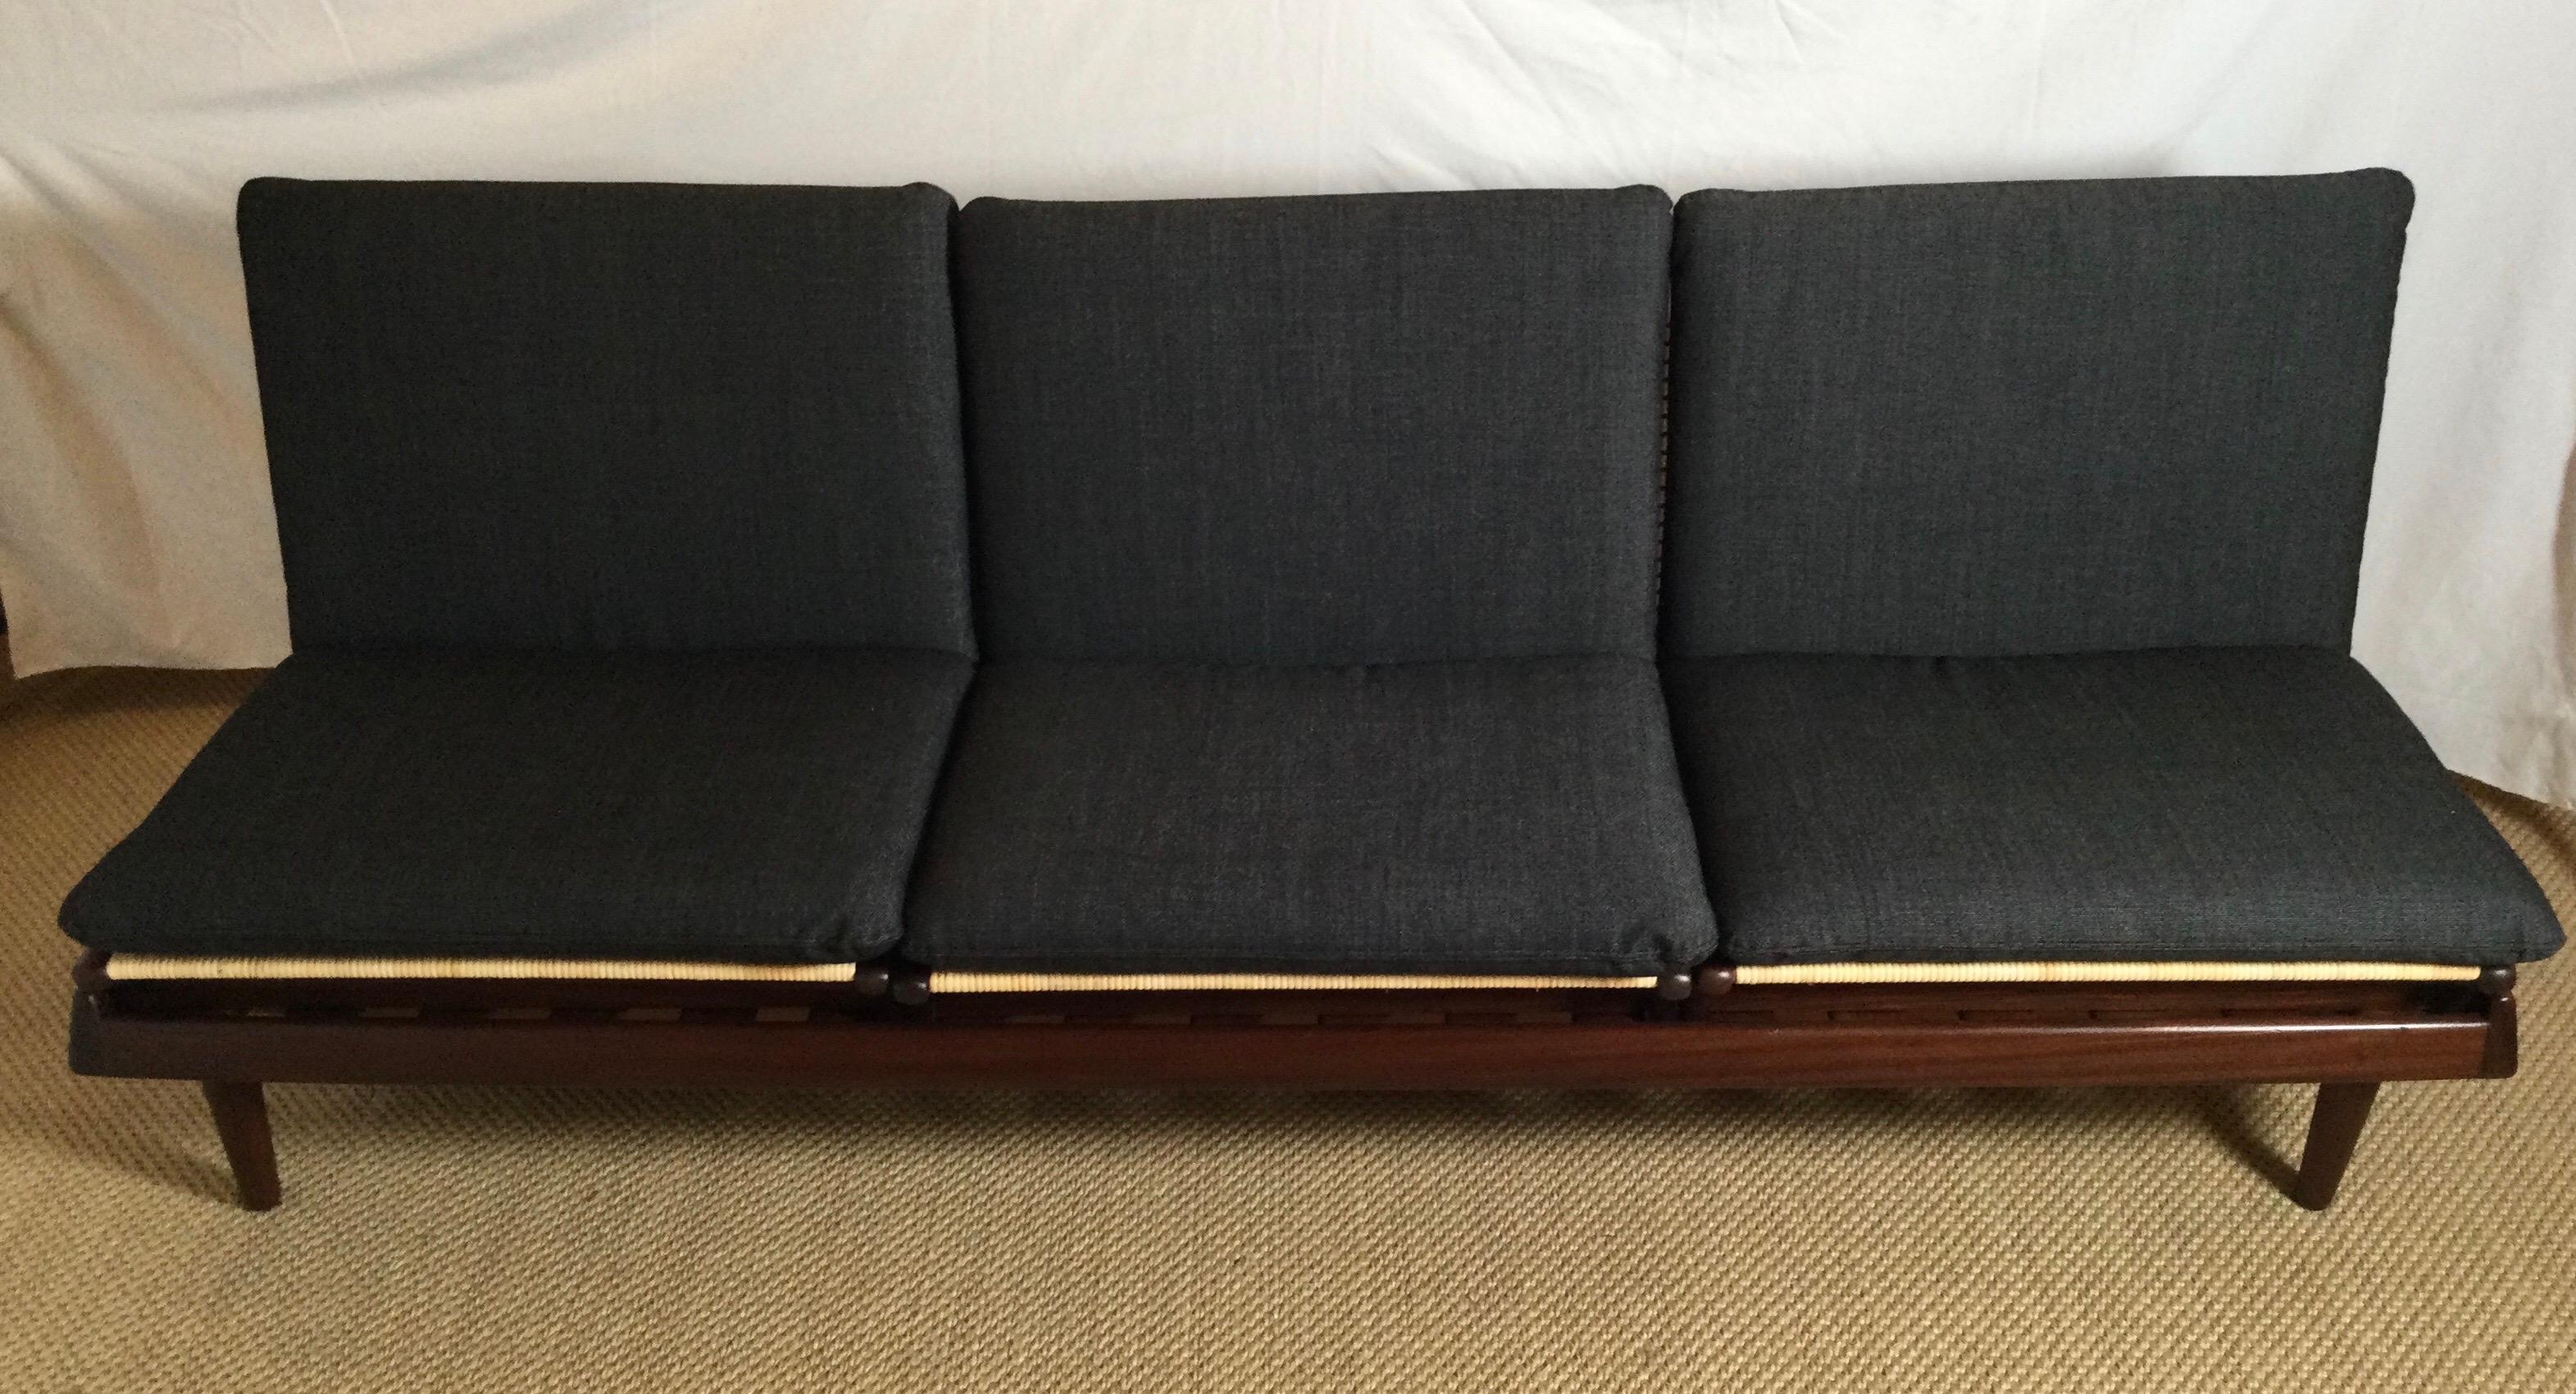 Ein außergewöhnliches frühes Beispiel für ein TV-Modulsofa, das von Hans Olsen entworfen und von Bramin in Dänemark hergestellt wurde. Dieses modulare Sofa besteht aus einer Bank mit drei Sitzplätzen. Die Bank kann als Tagesbett verwendet werden